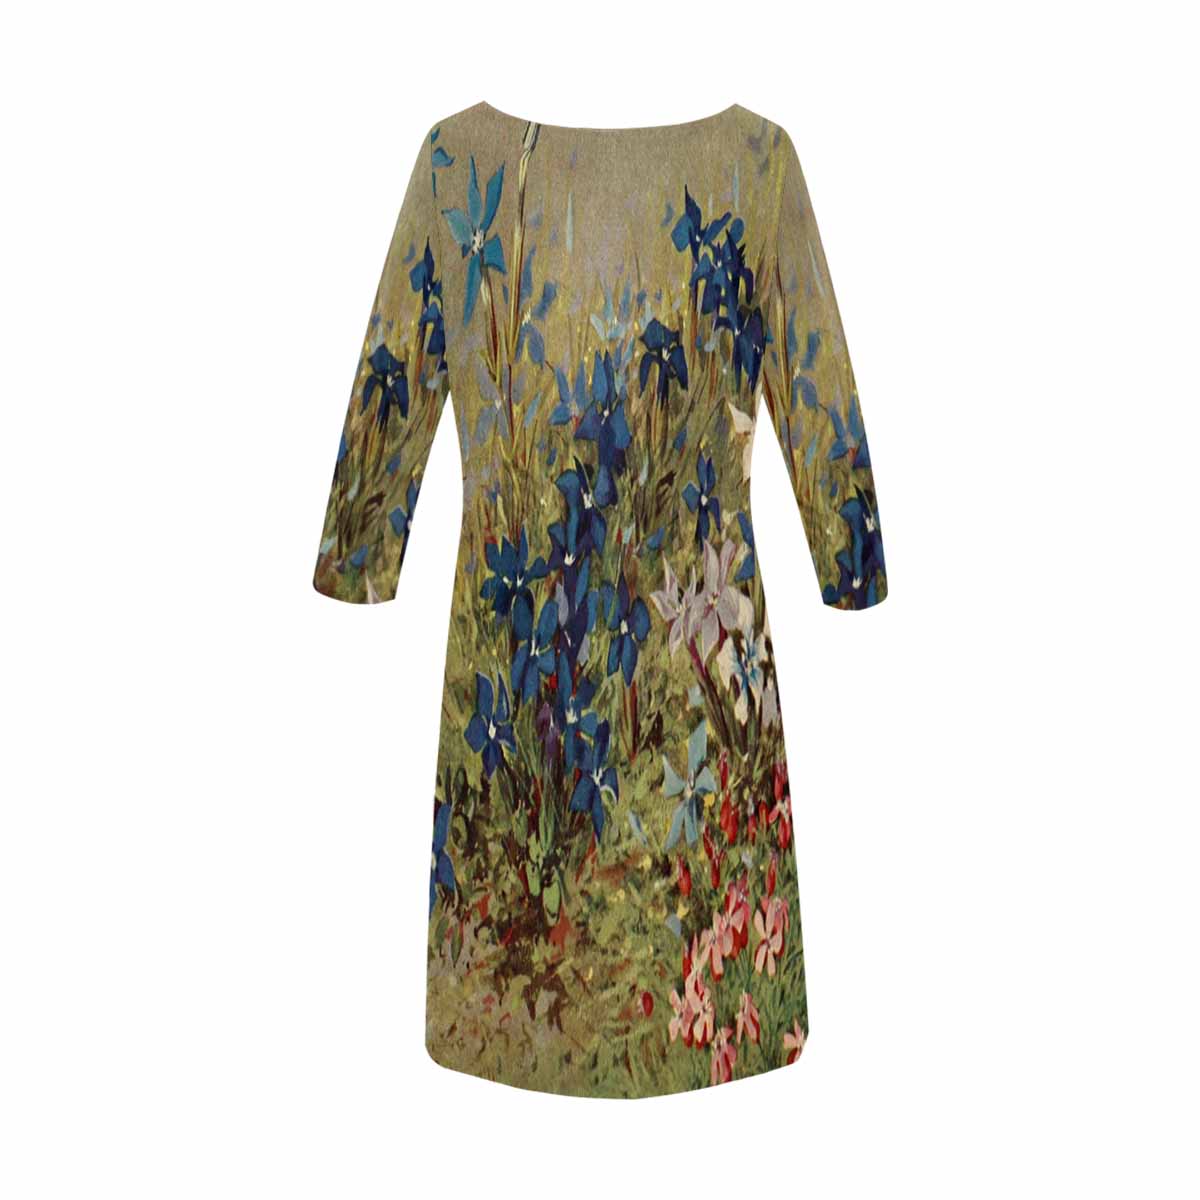 Vintage floral loose dress, model D29532 Design 39